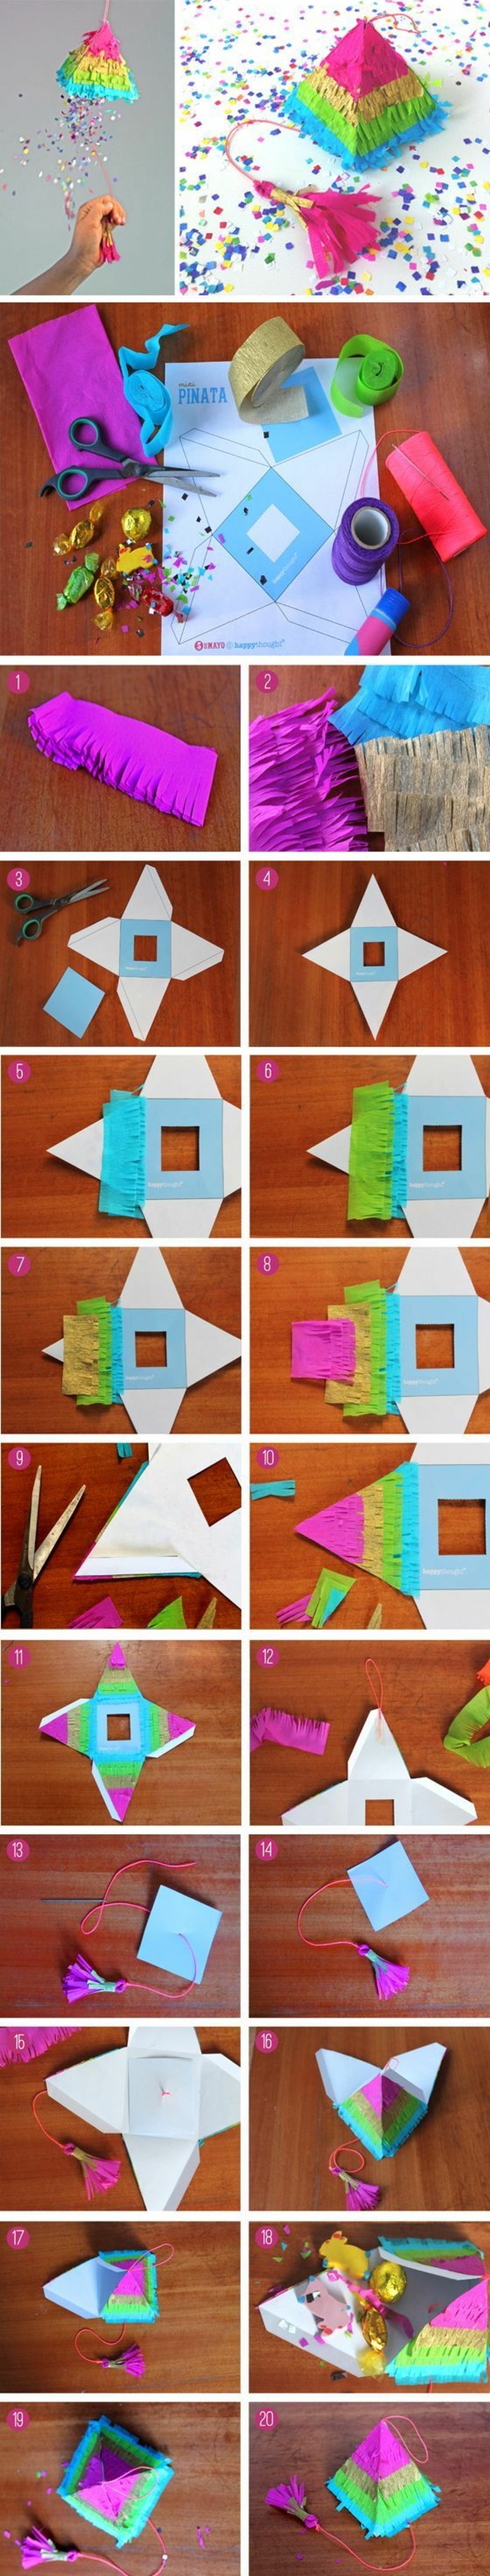 Készítsen egy kis piramist a kartonból, színes papírt, ollót